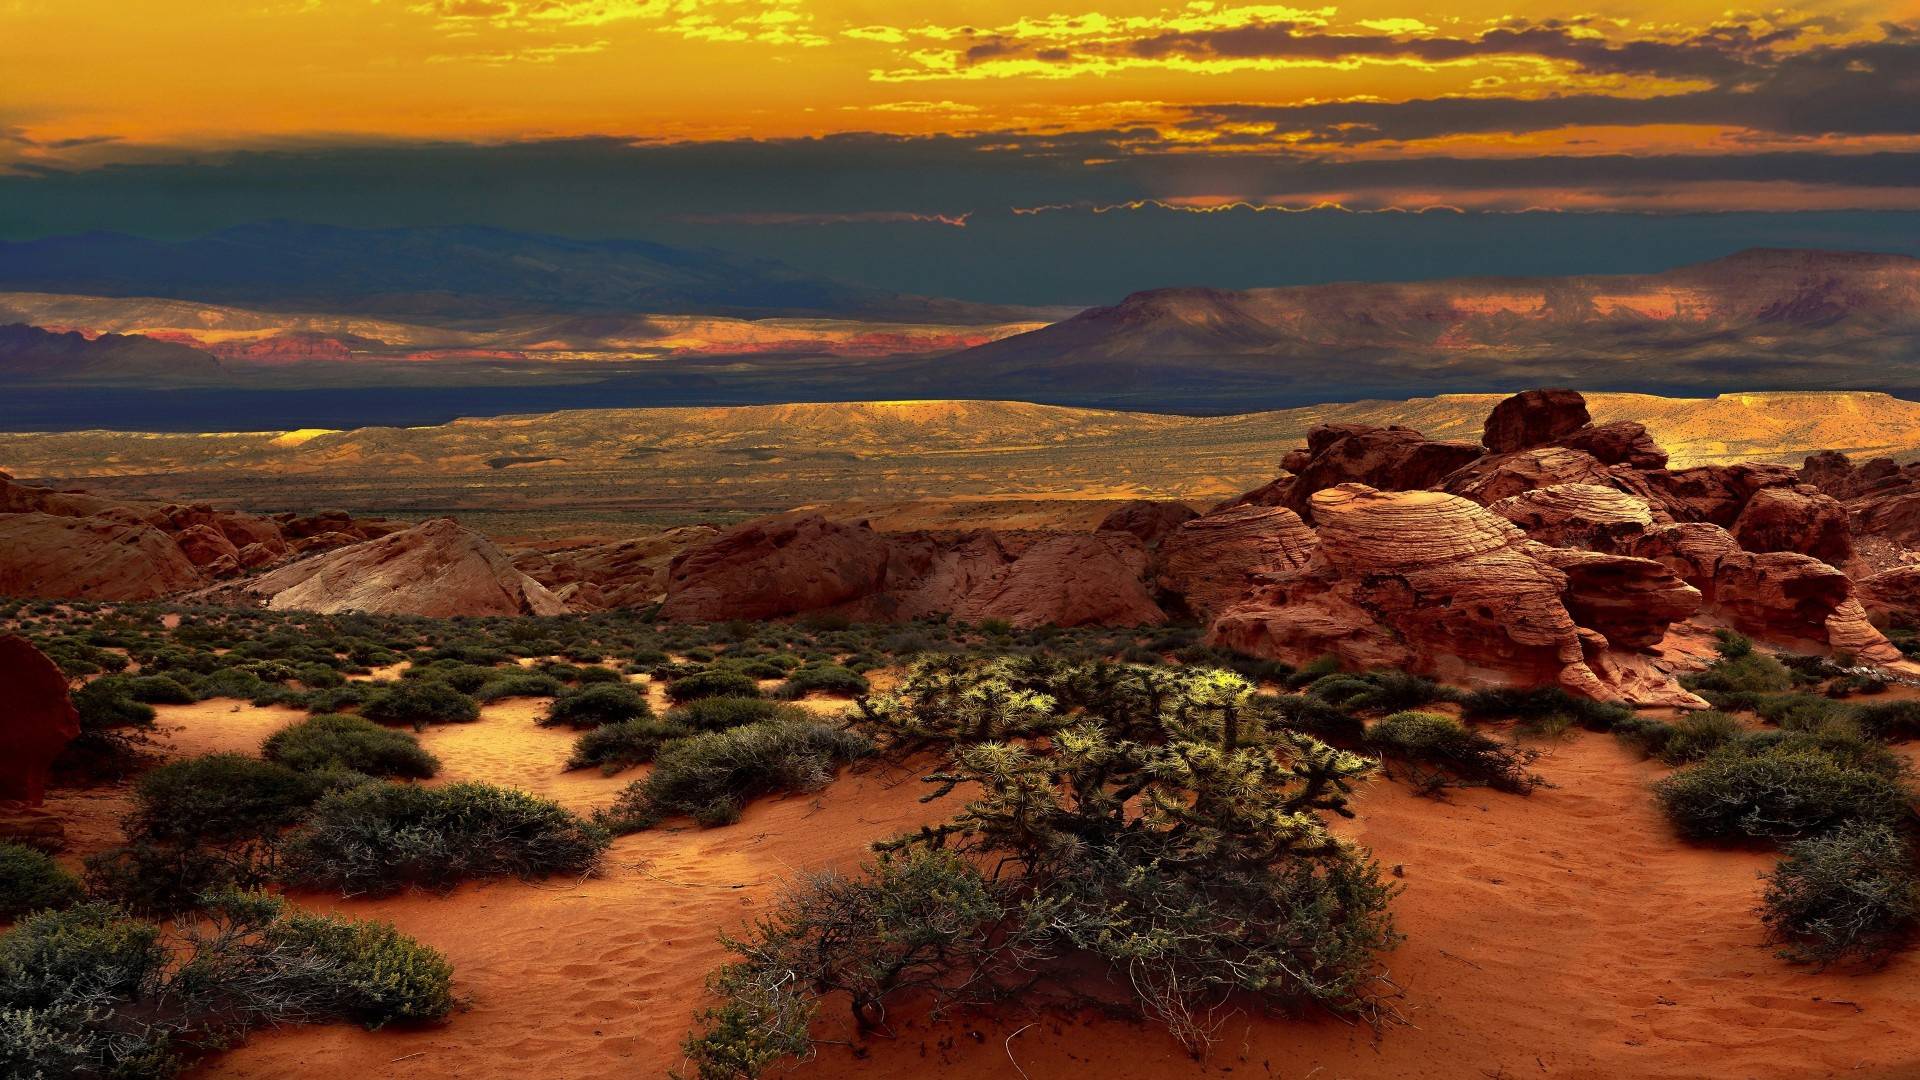 Desert Nevada, Sunset clouds, Widescreen wallpapers, Serene atmosphere, 1920x1080 Full HD Desktop